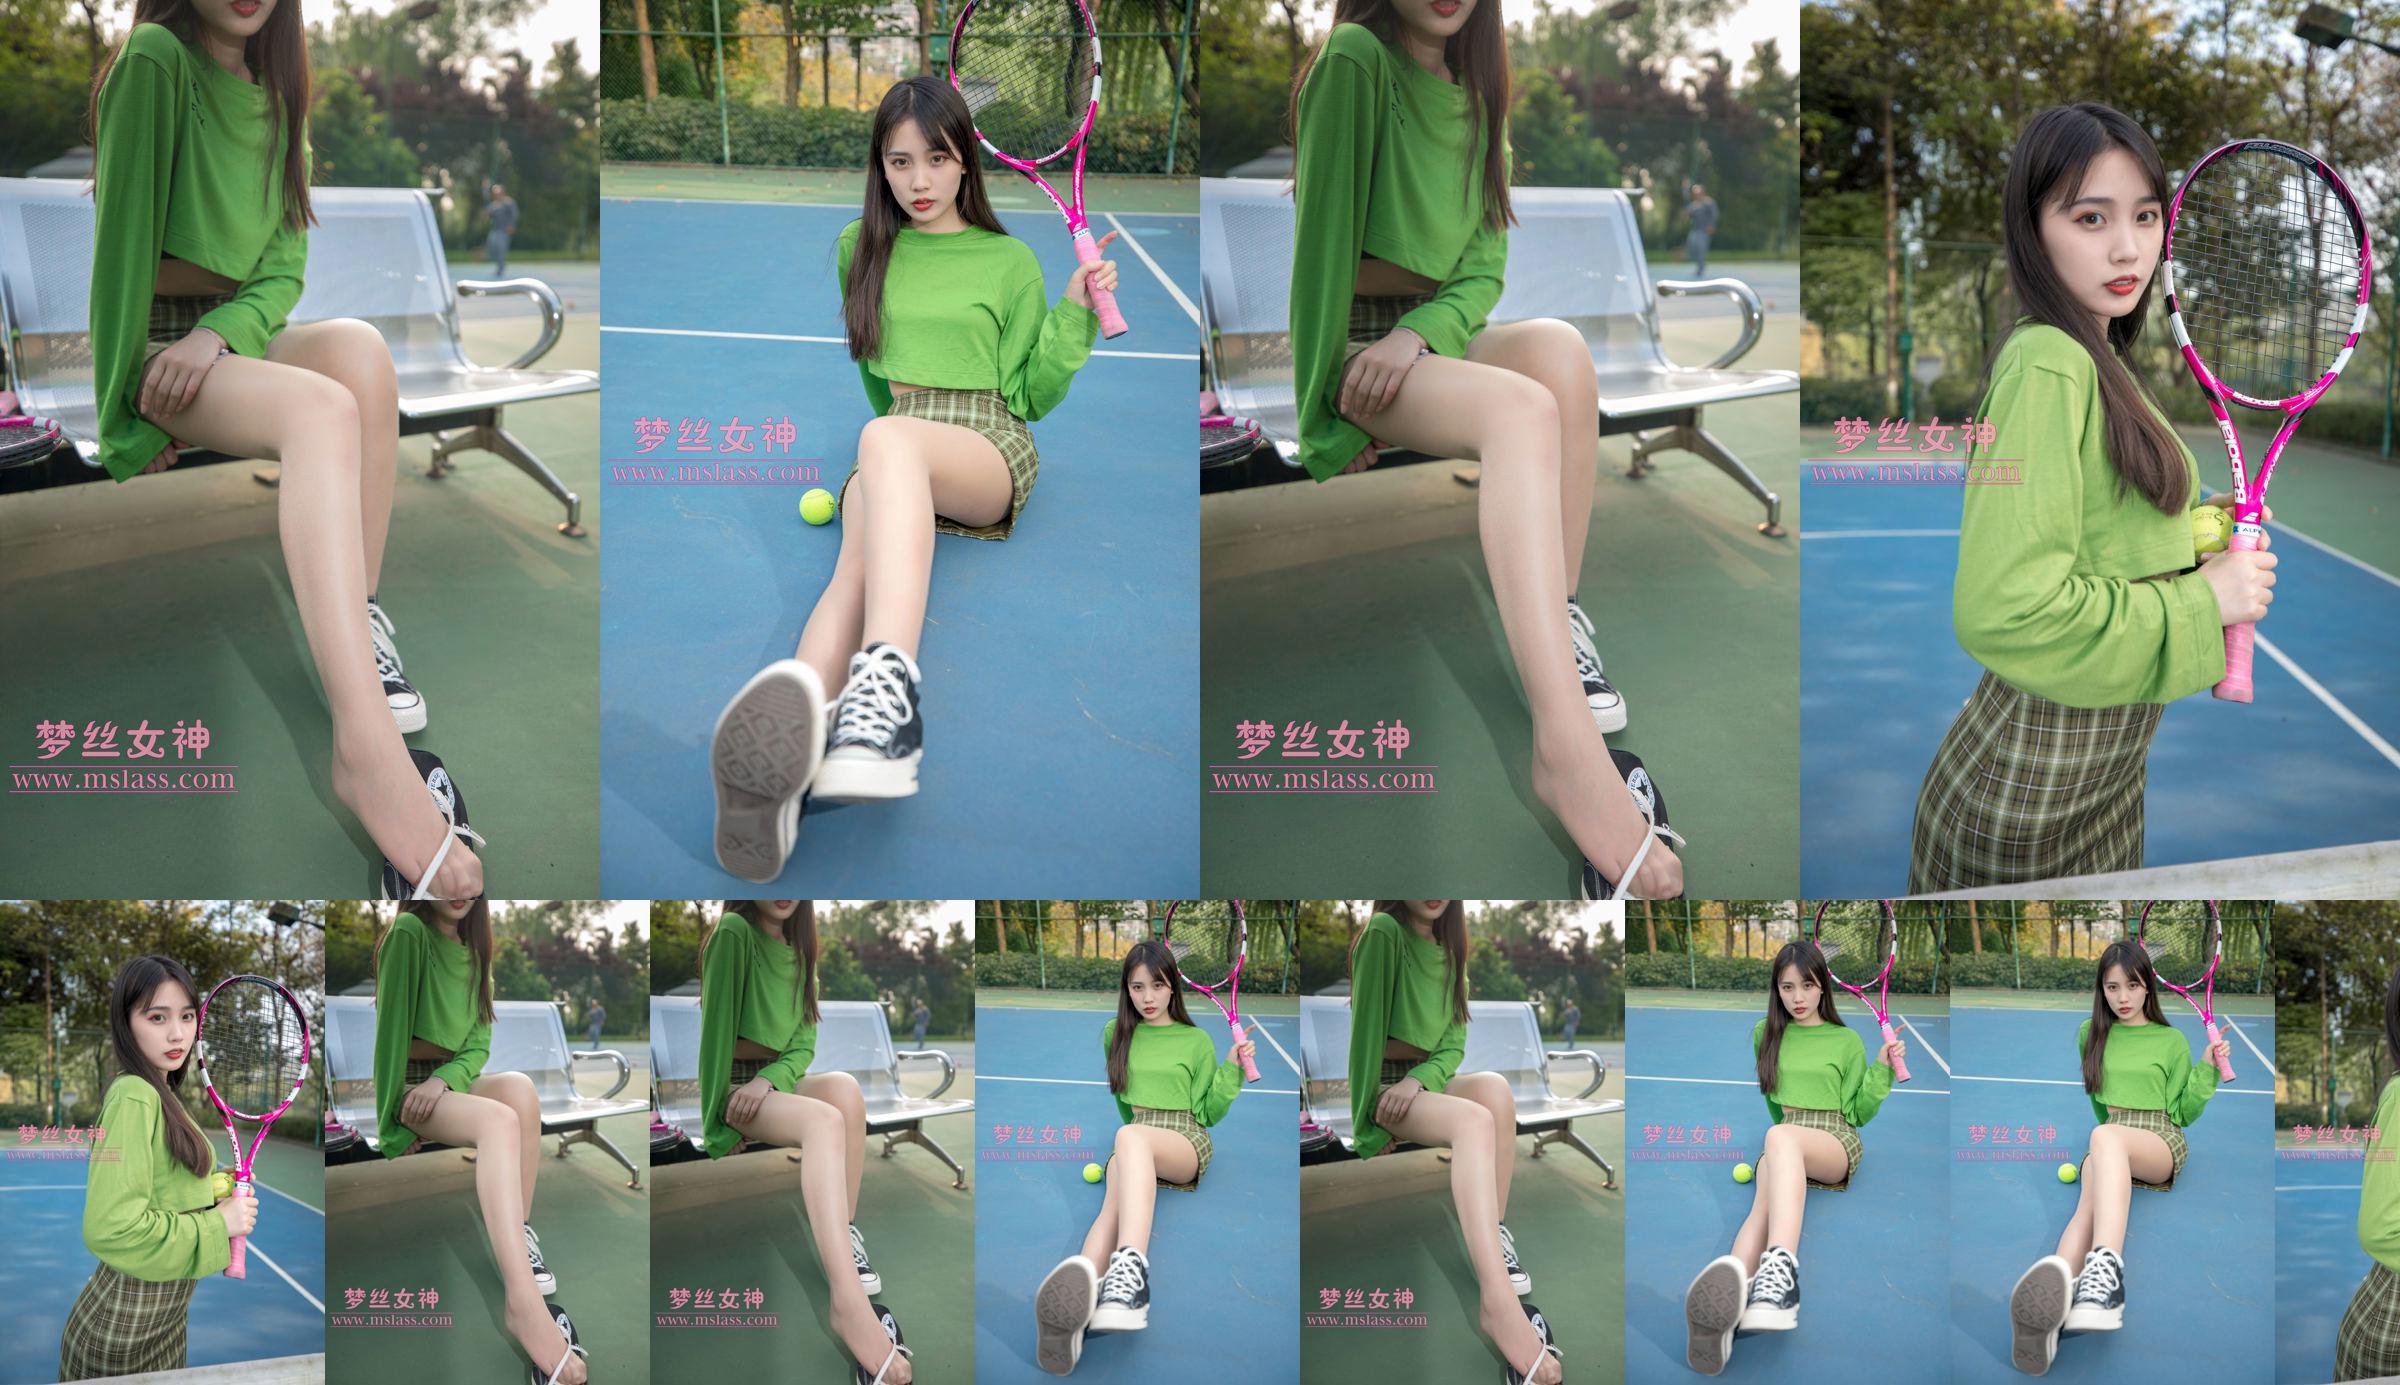 [꿈의 여신 MSLASS] Xiang Xuan 테니스 소녀 No.818796 페이지 1